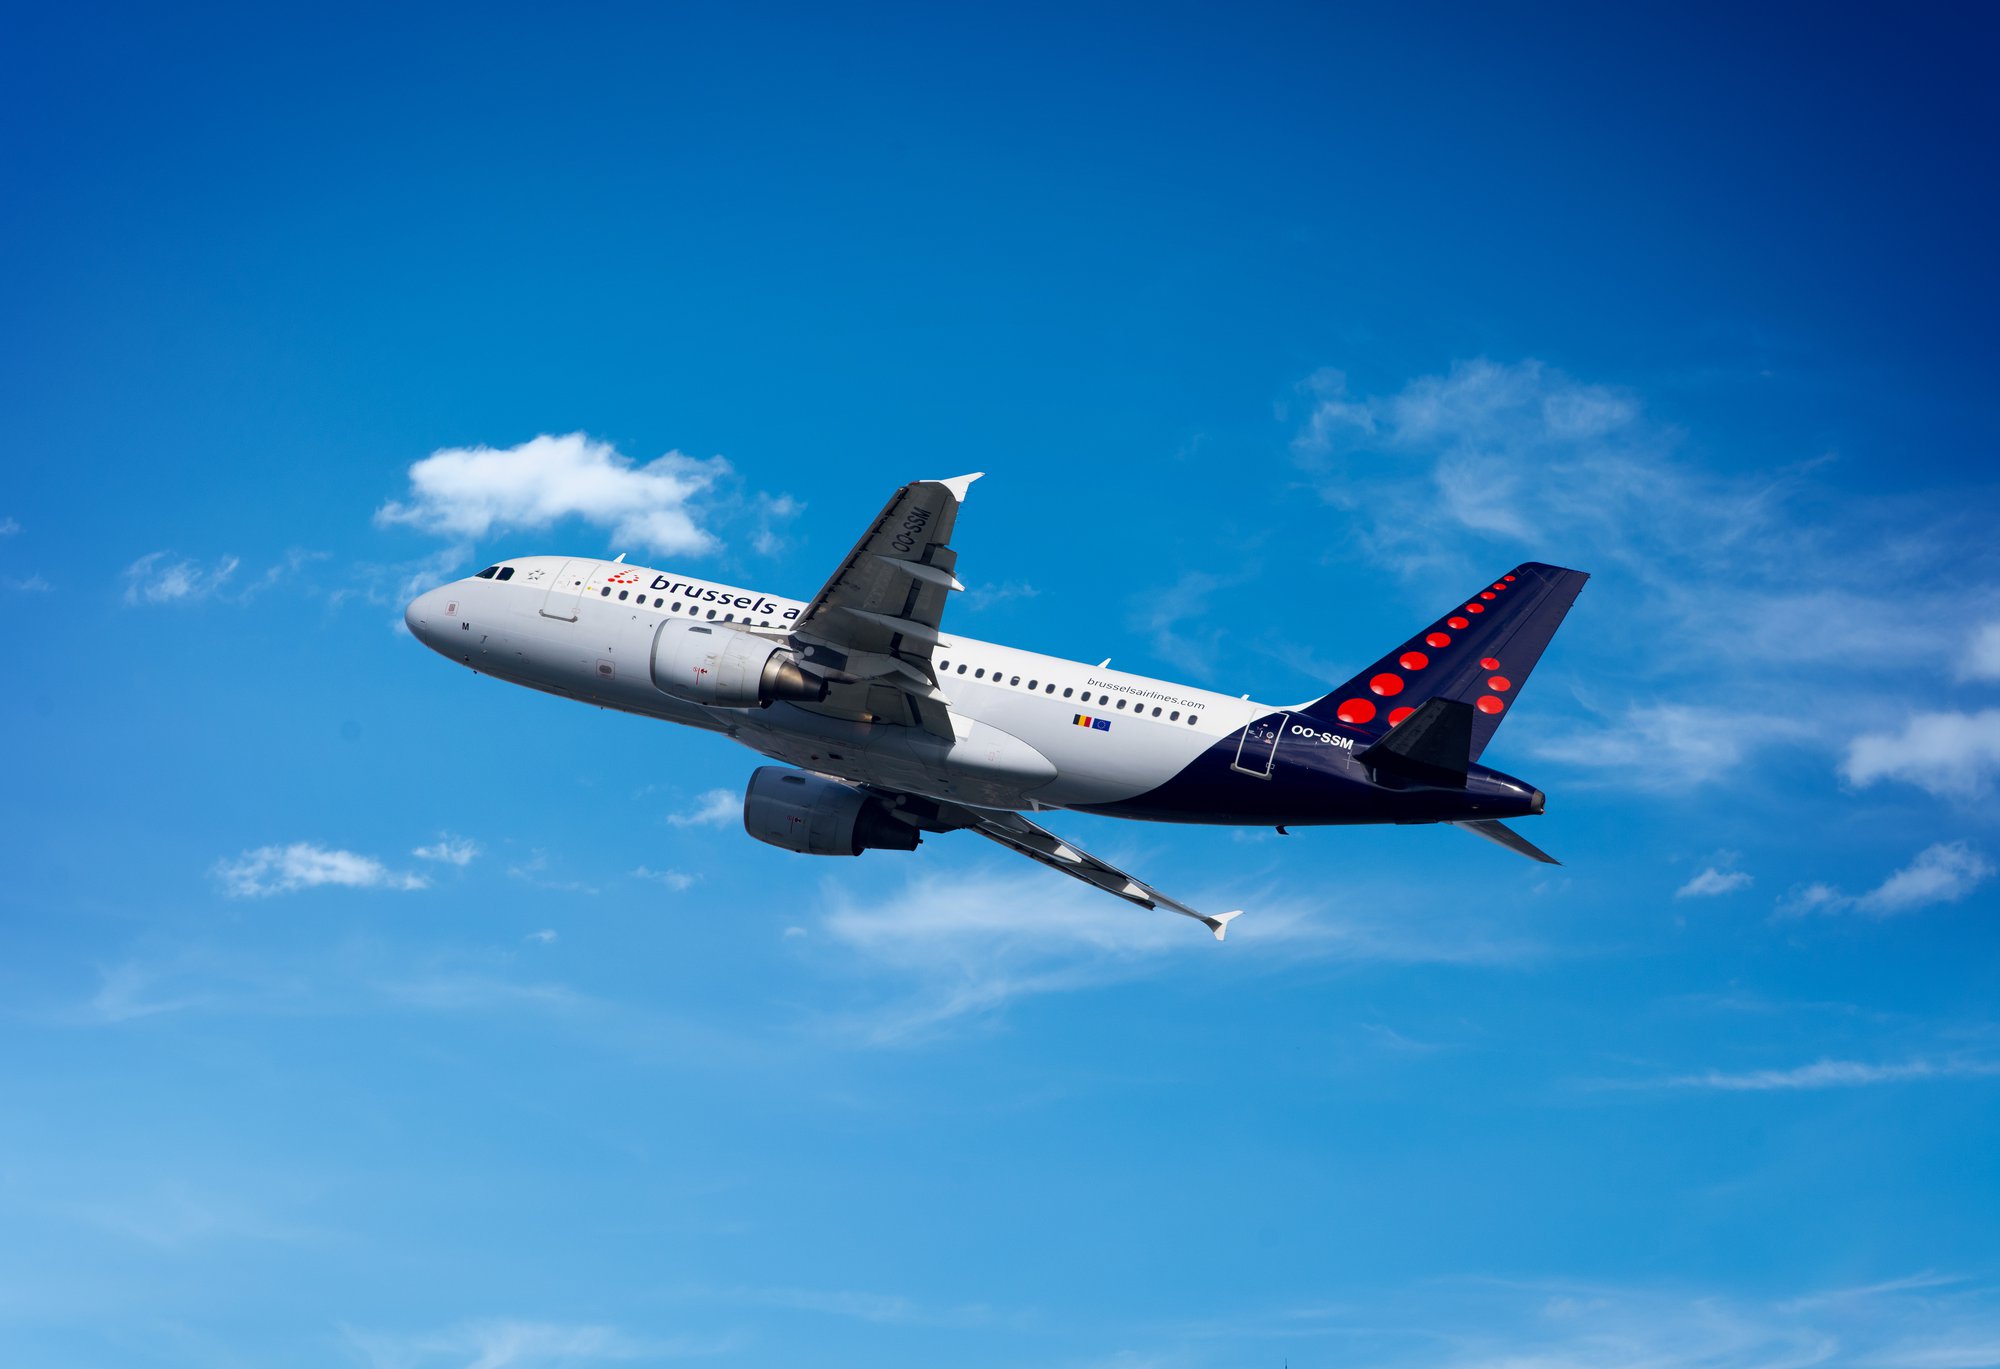 Brussels Airlines zoekt met Randstad naar tijdelijke jobs voor werkloos personeel